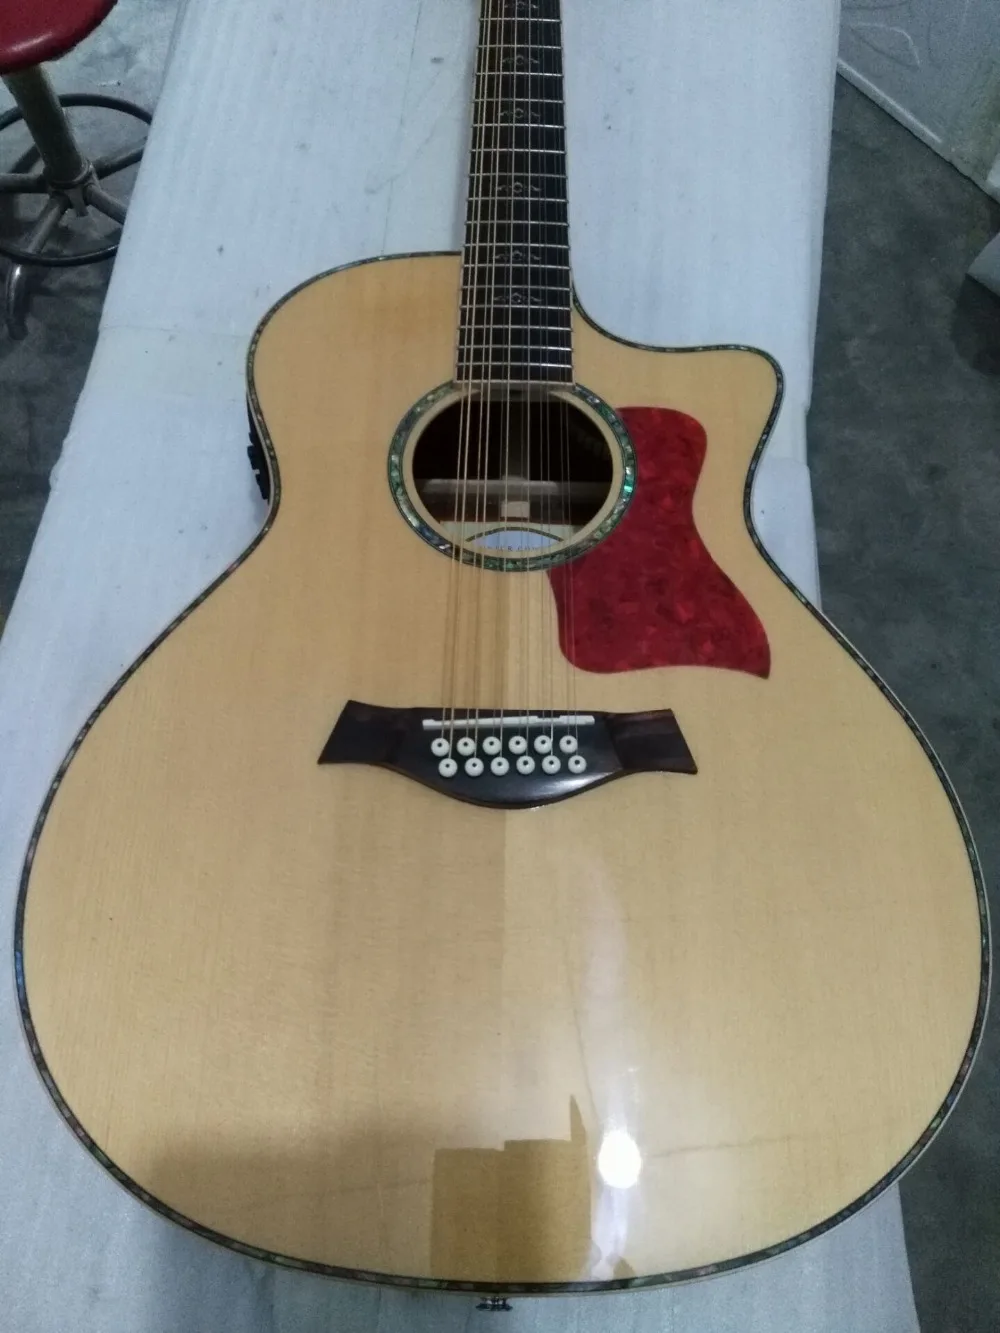 12 струнная гитара Chaylor solid spruce cutaway Акустическая гитара ra 12 струн 814 ce акустическая электрическая гитара на заказ